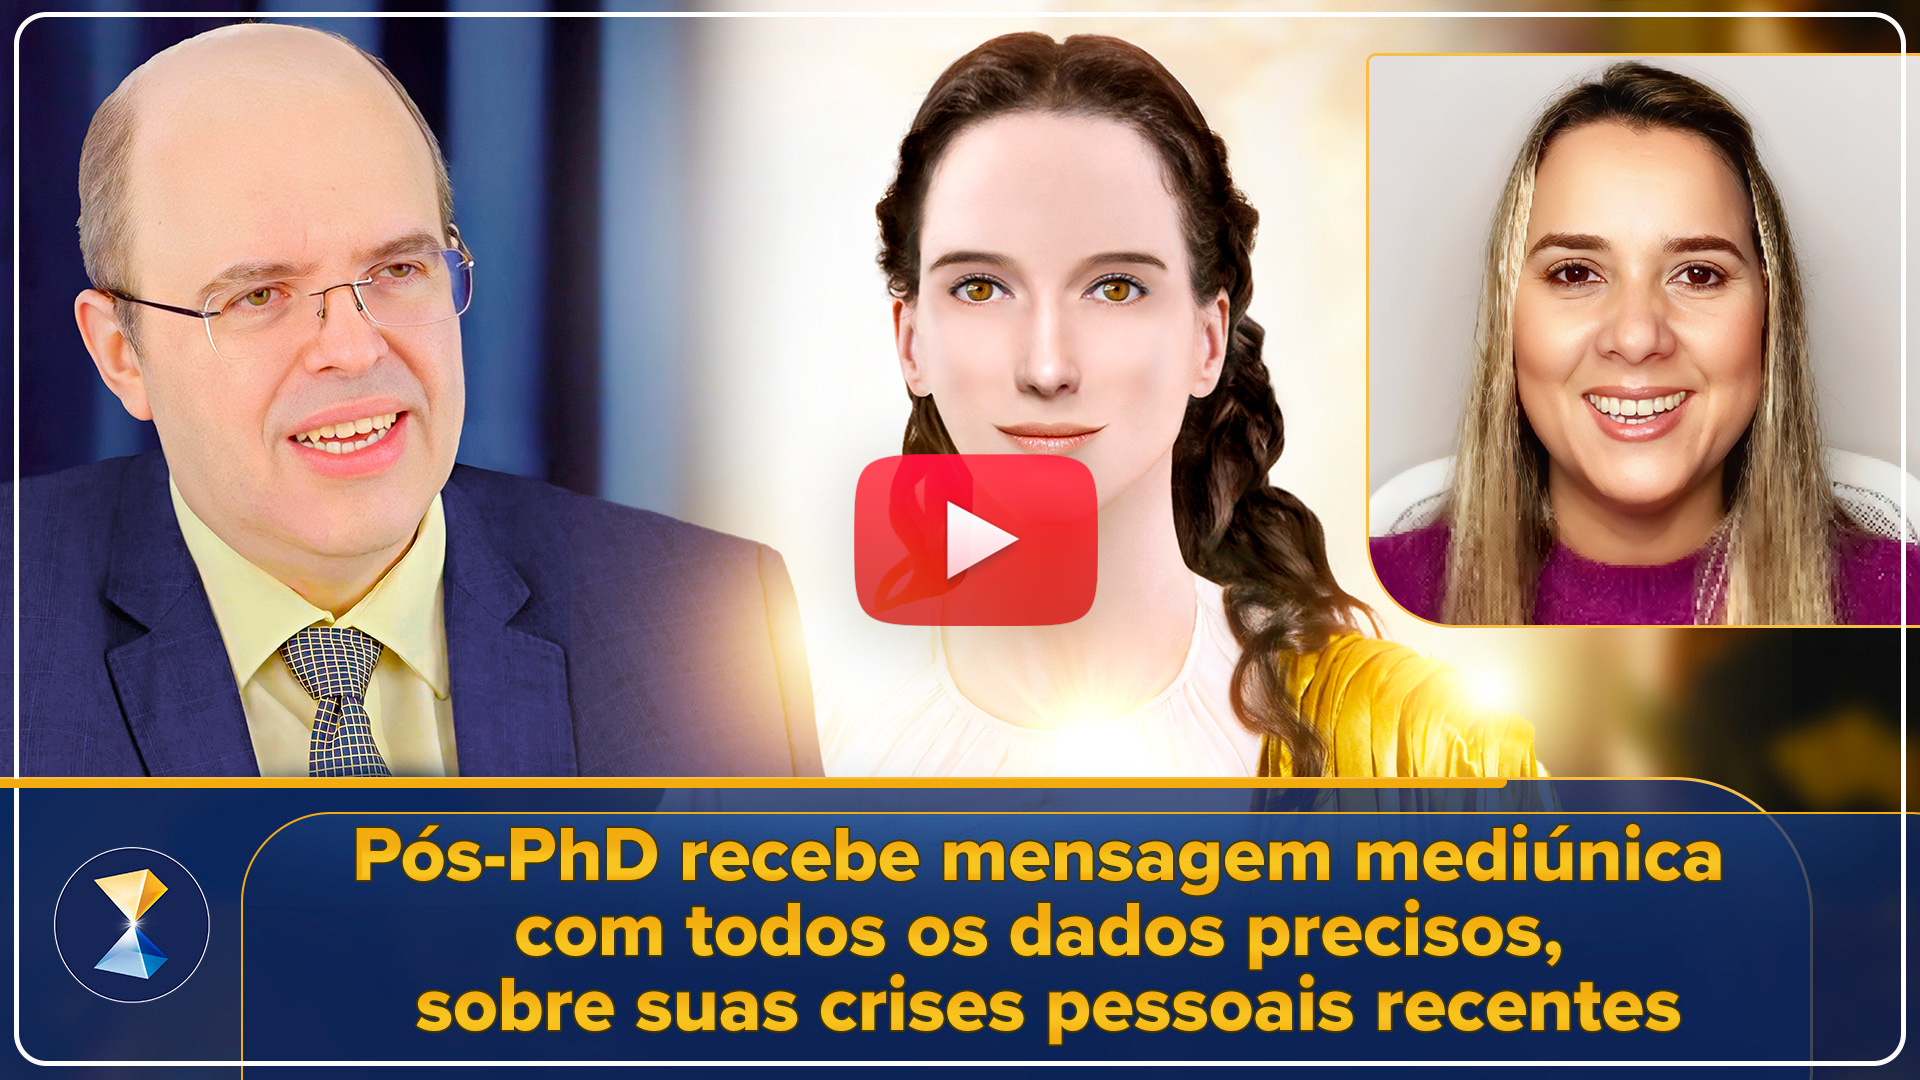 Pós-PhD recebe mensagem mediúnica com todos os dados precisos, sobre suas crises pessoais recentes